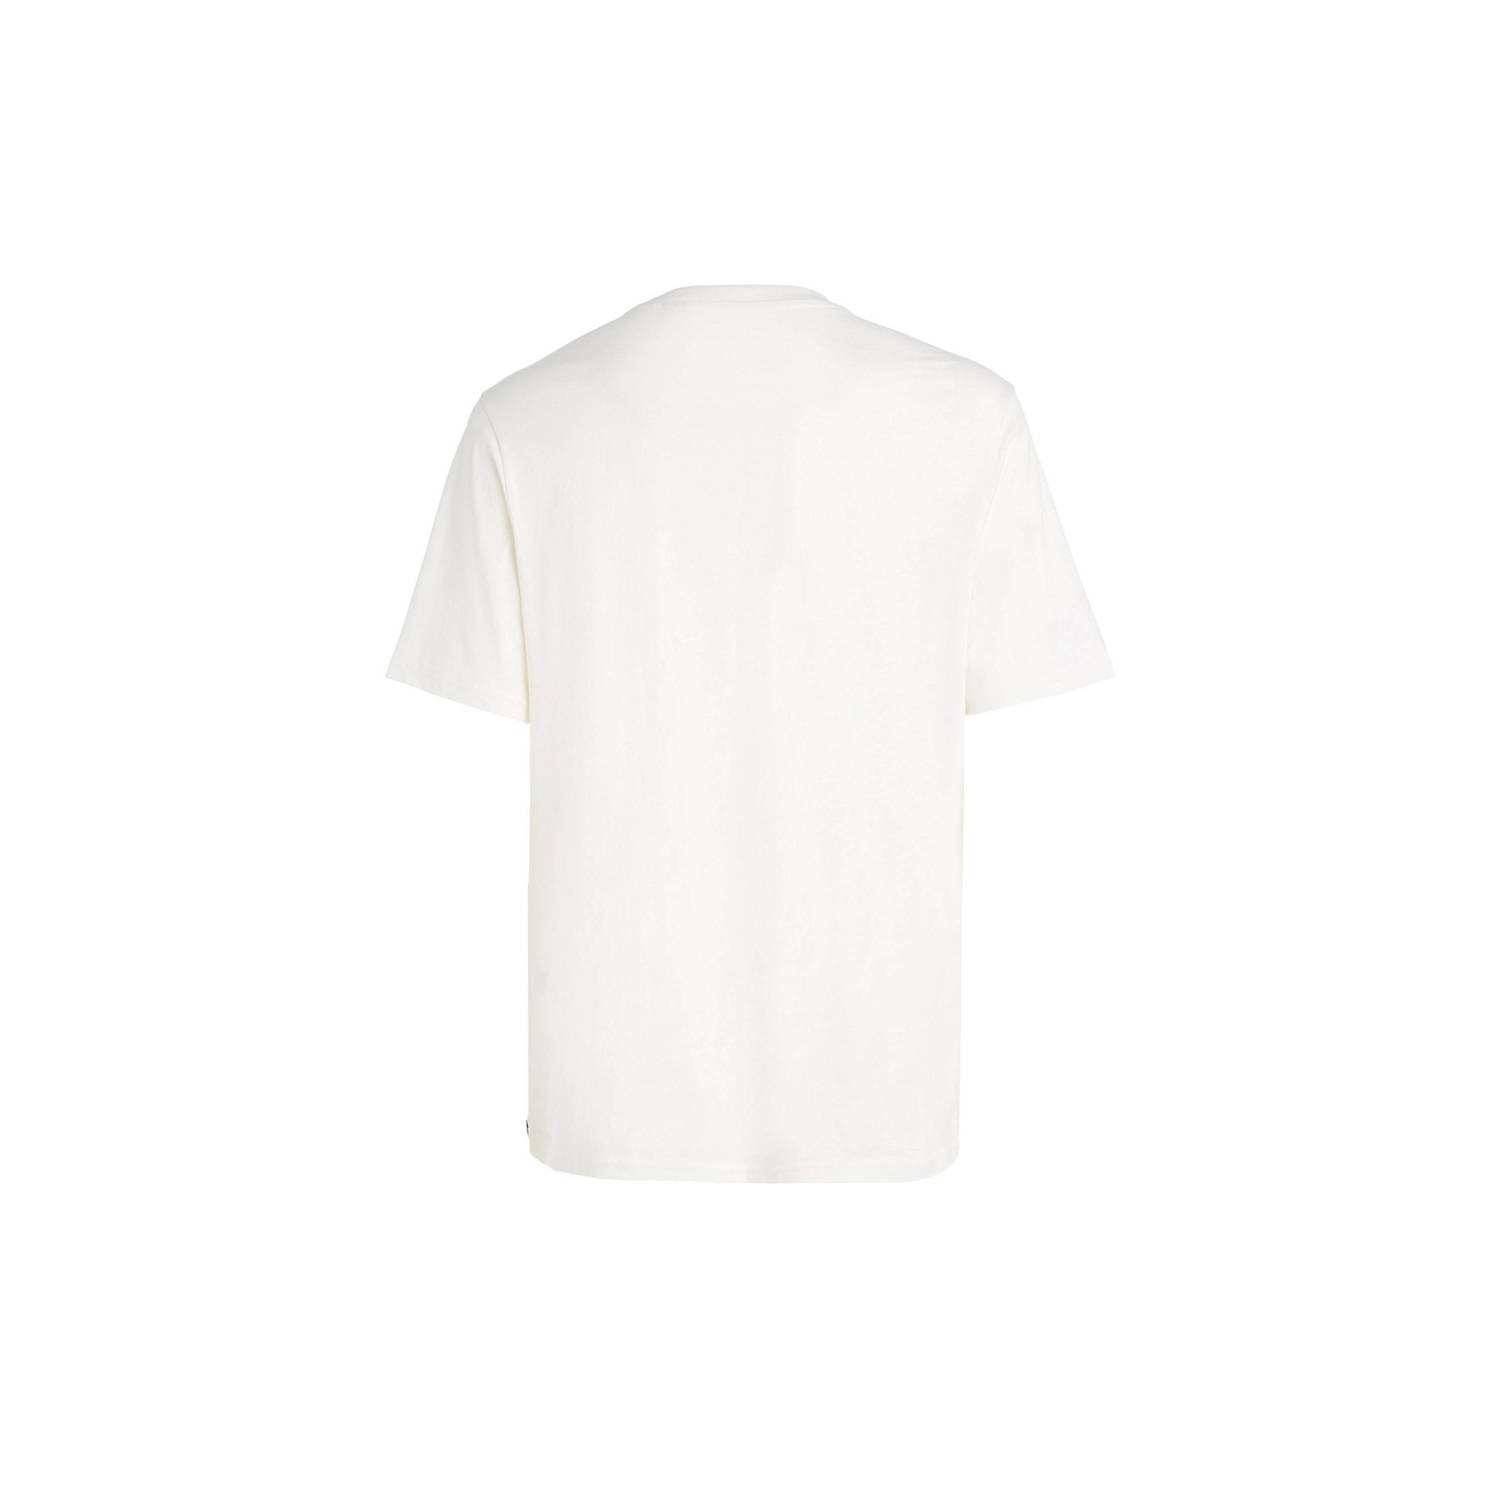 O'Neill T-shirt met printopdruk wit